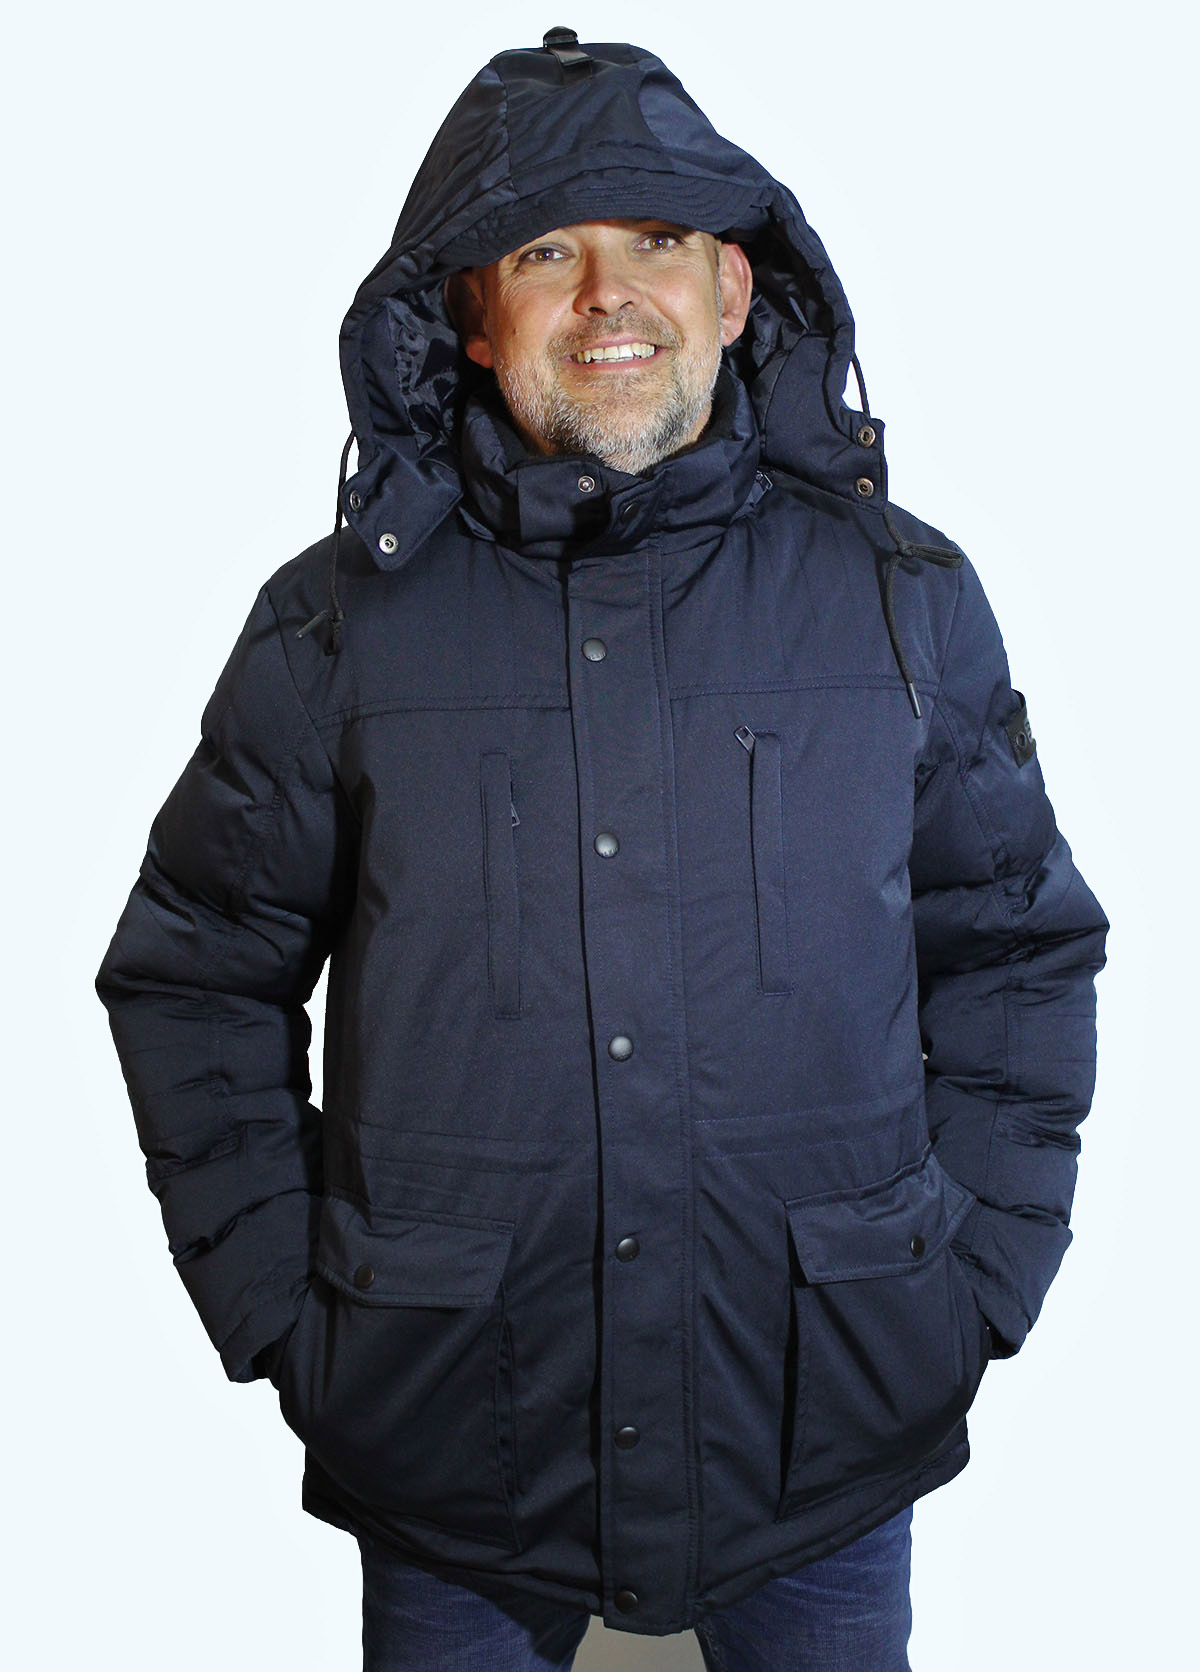 Blend abric d'home amb caputxa extraíble 20709009/74645 blau marí